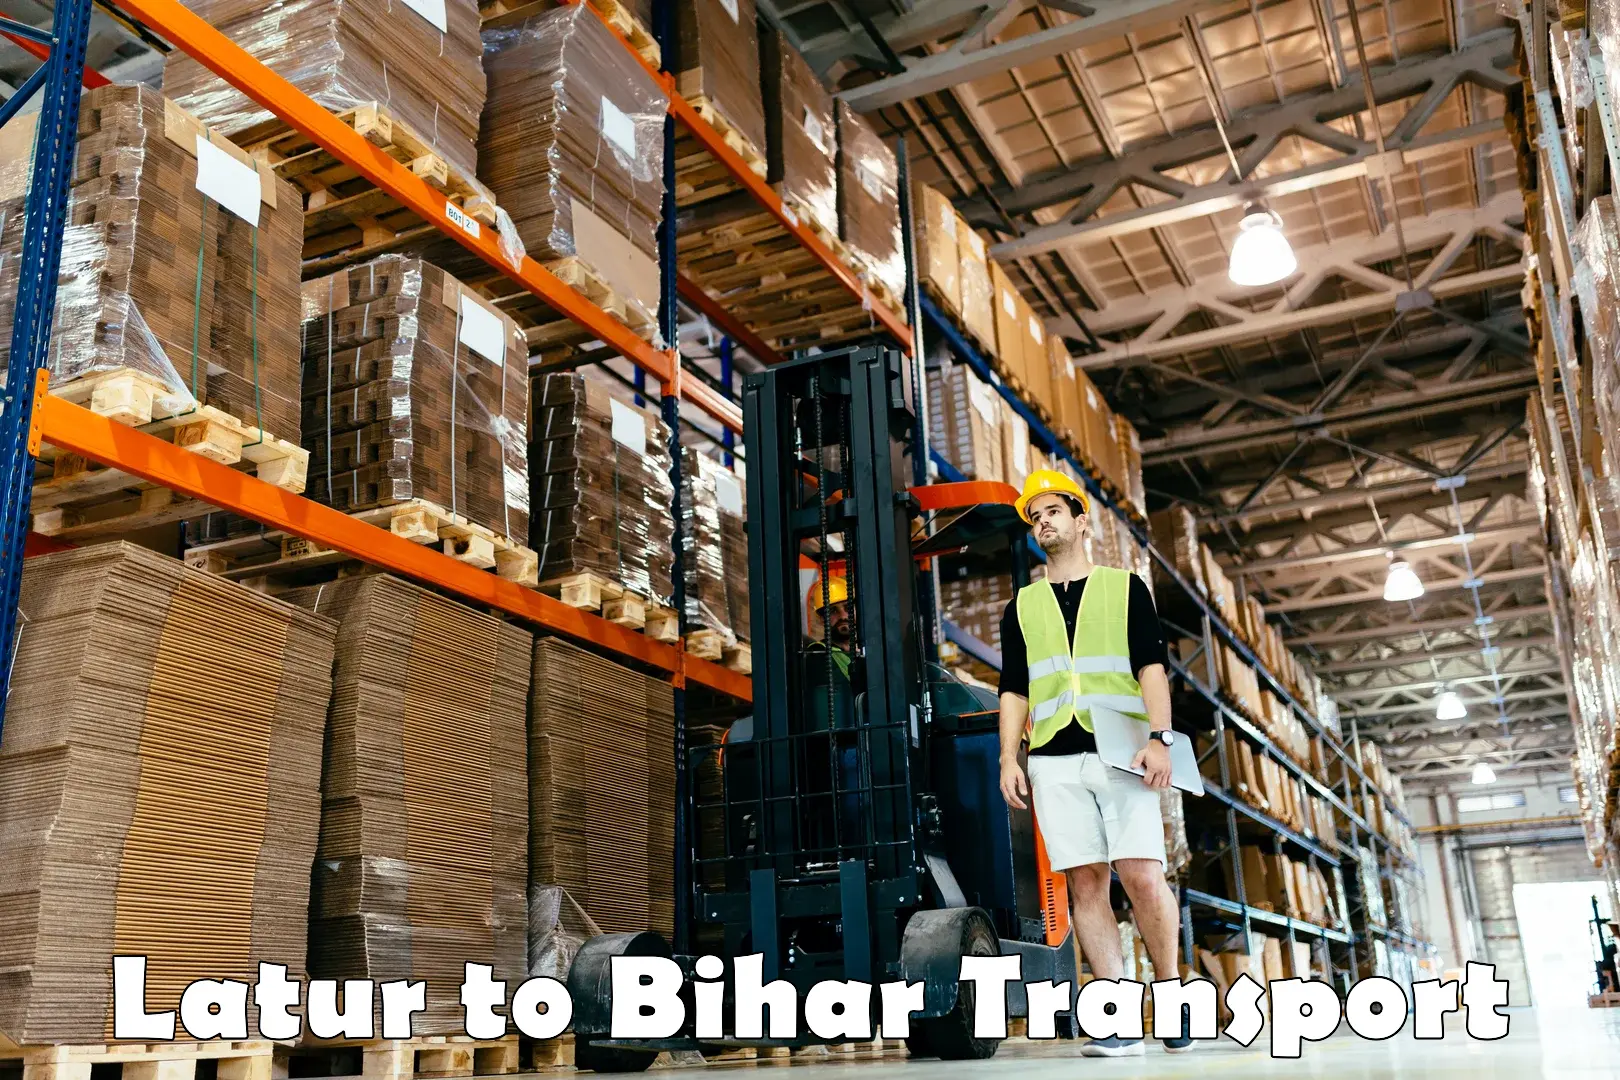 Furniture transport service Latur to Bhorey